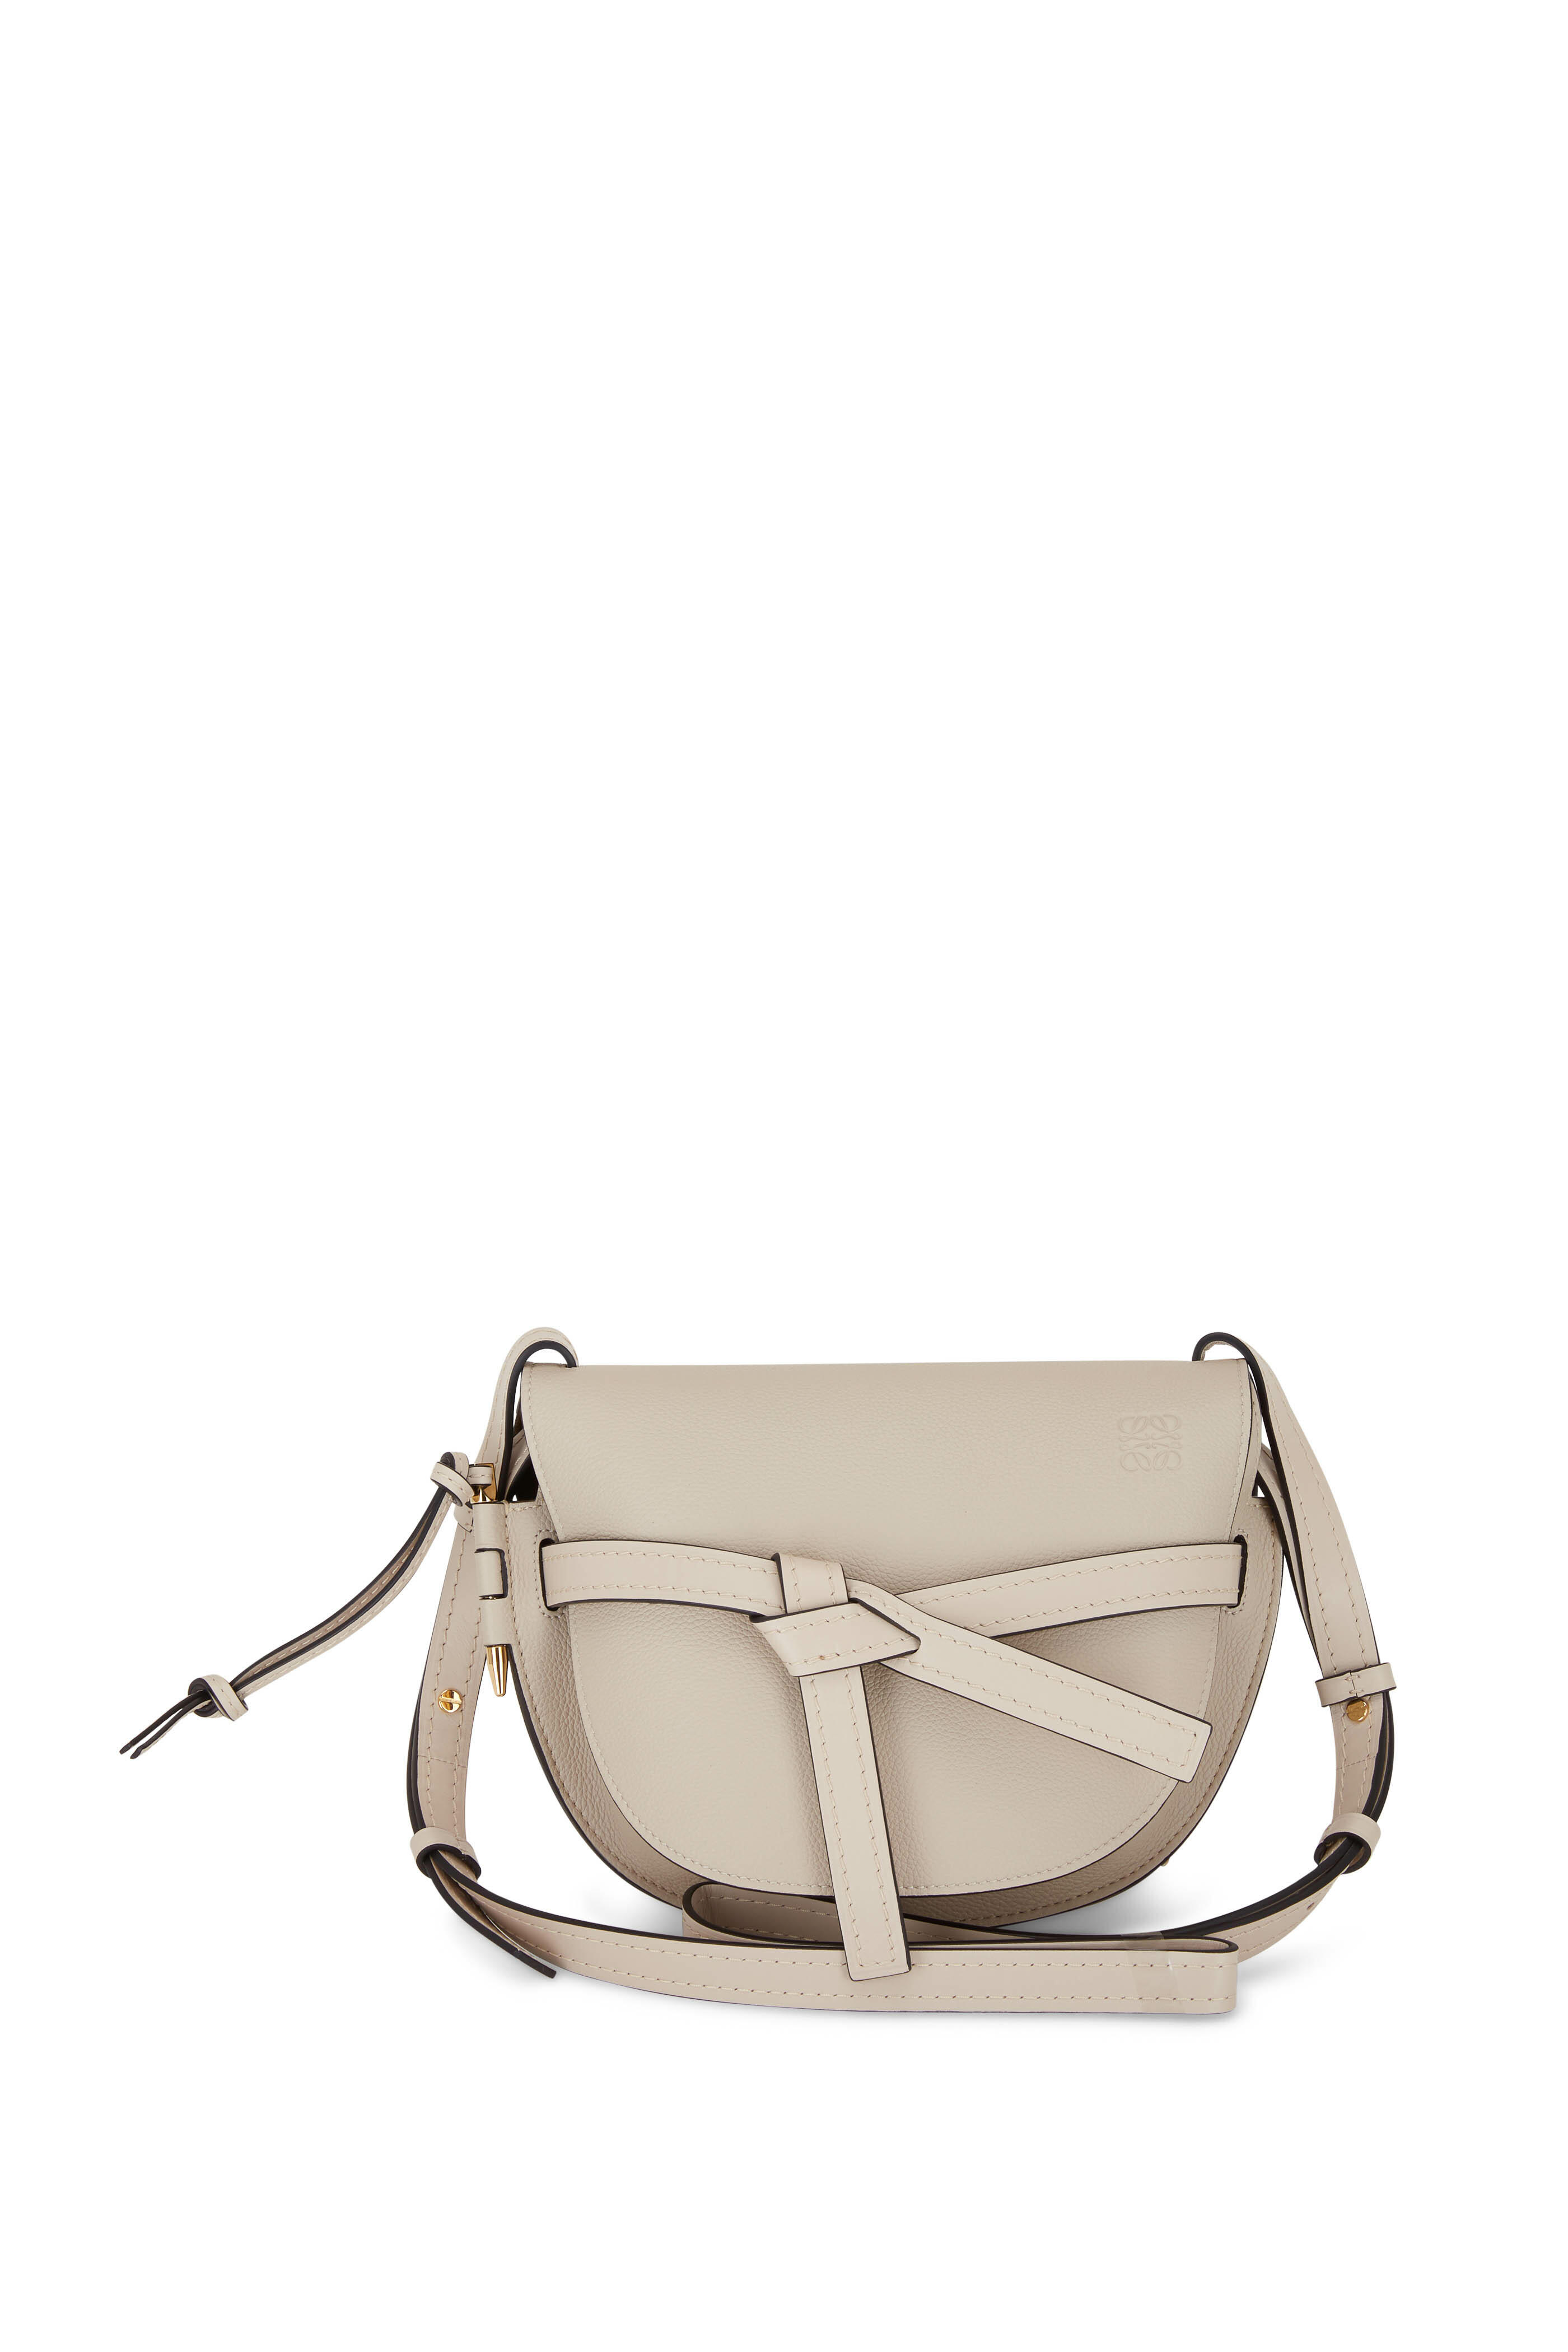 Loewe Gate Top Handle Mini Bag in Light Oat & Soft White